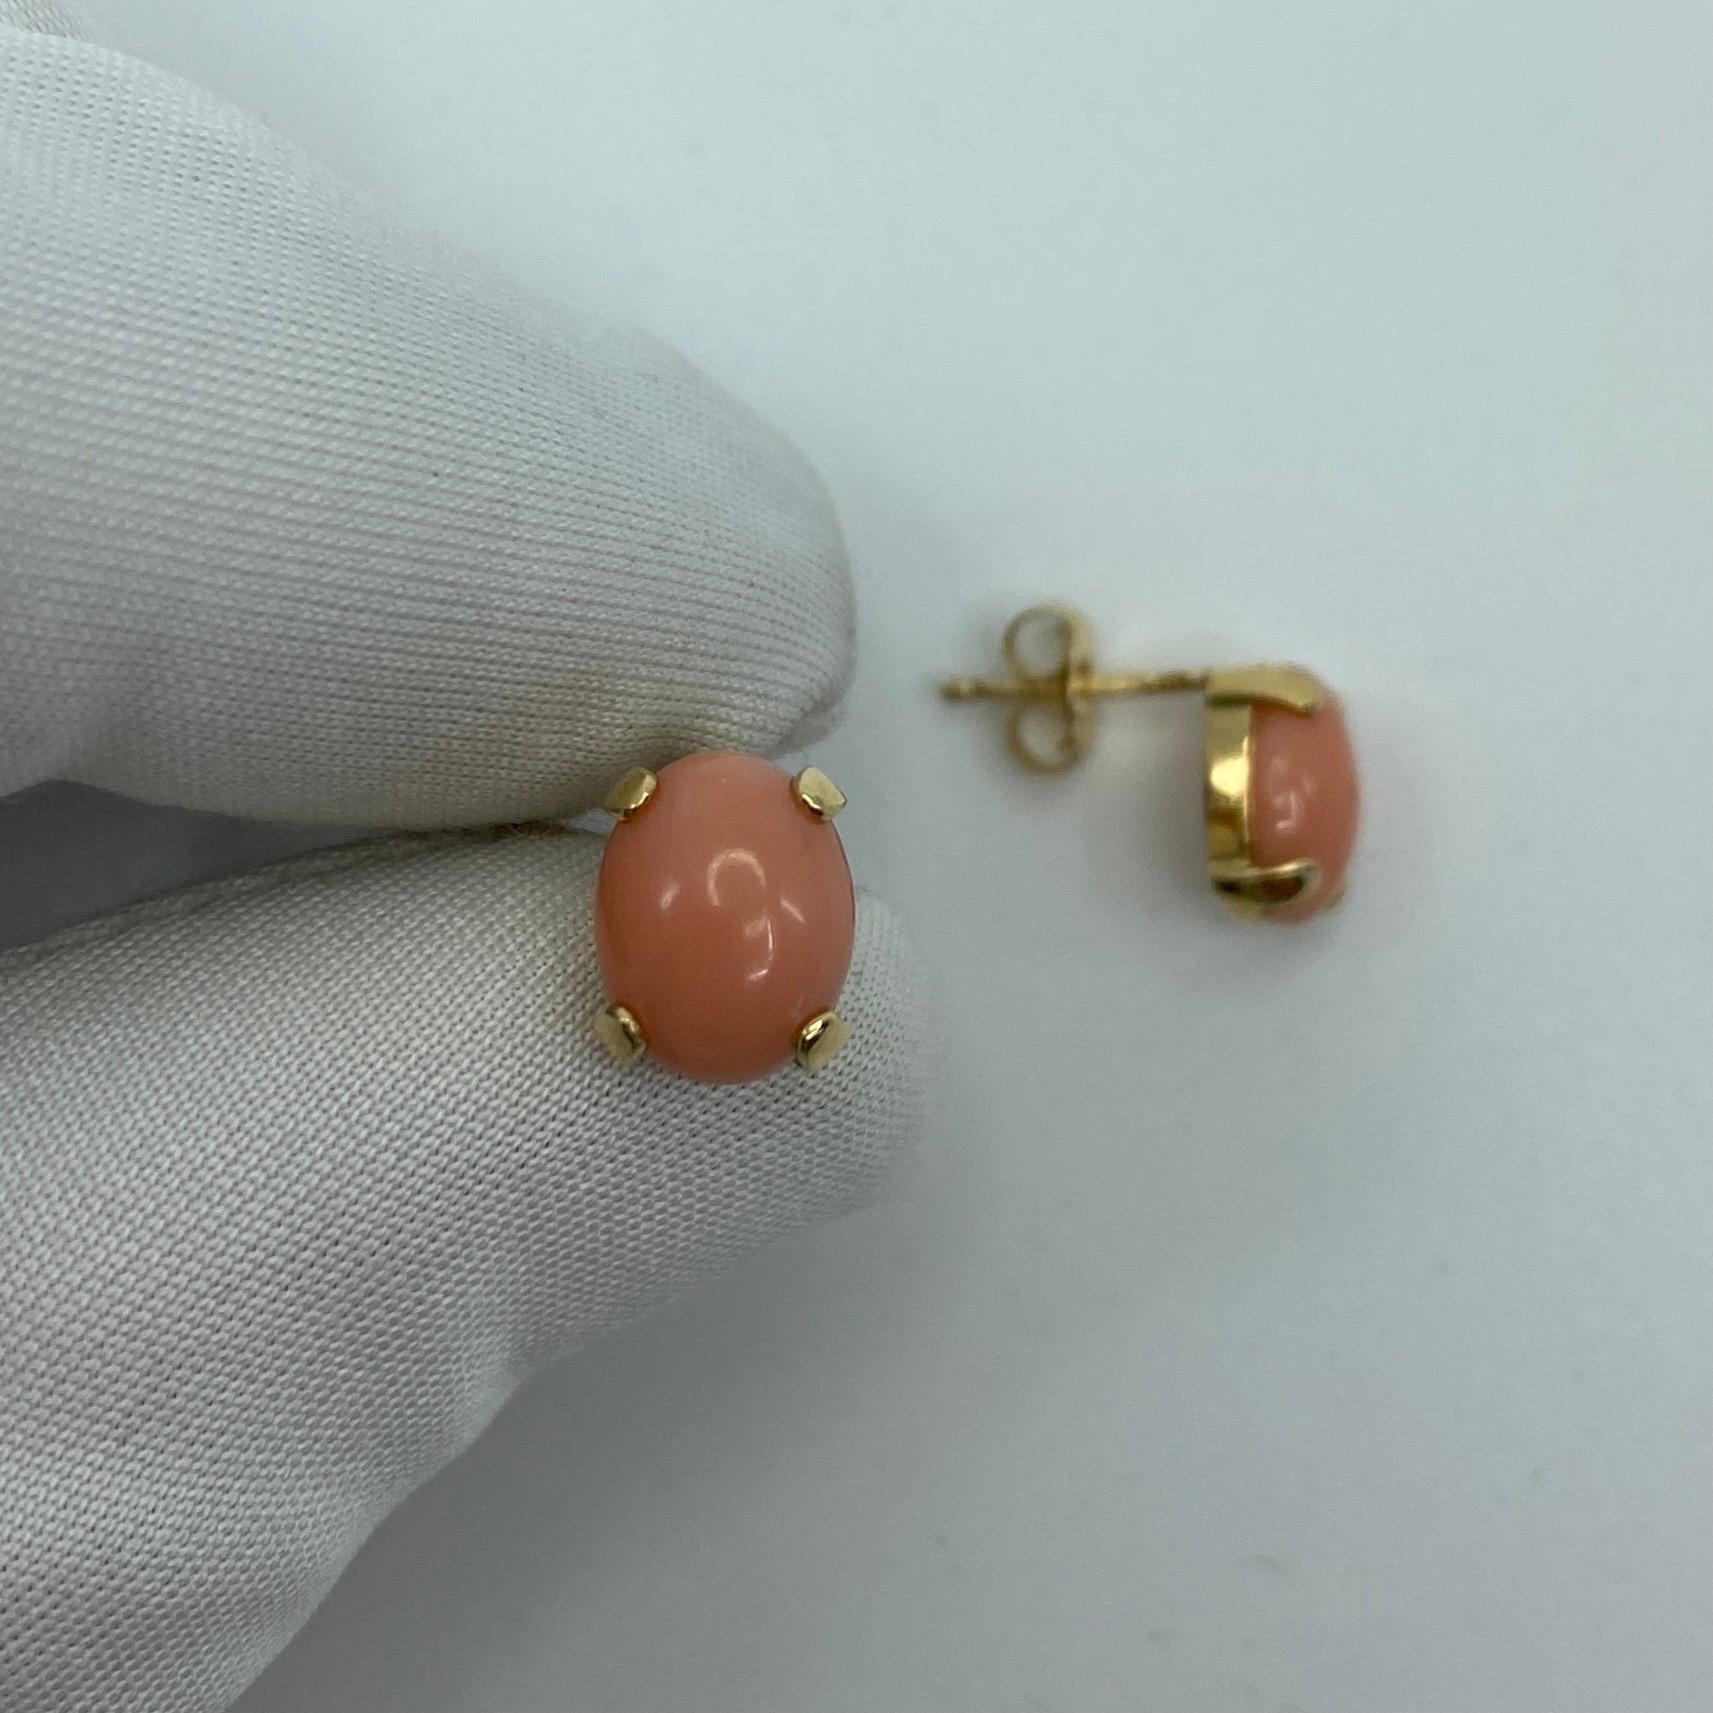 Natural 4 Carat Pink Orange Coral Earring Stud & Pendant Set 14k Yellow Gold 6